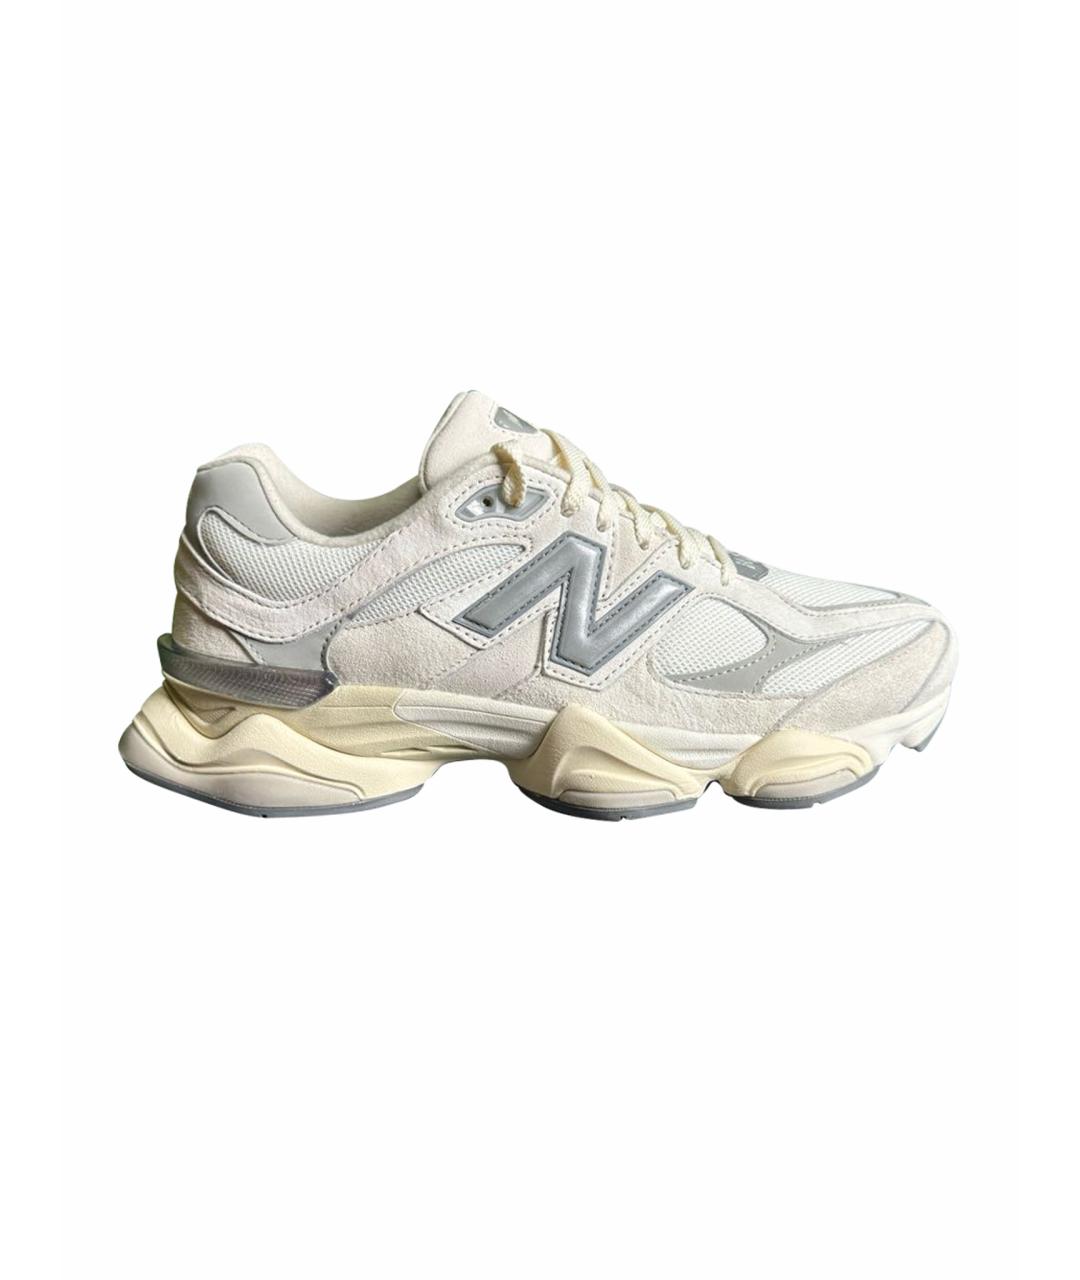 NEW BALANCE Белые низкие кроссовки / кеды, фото 1